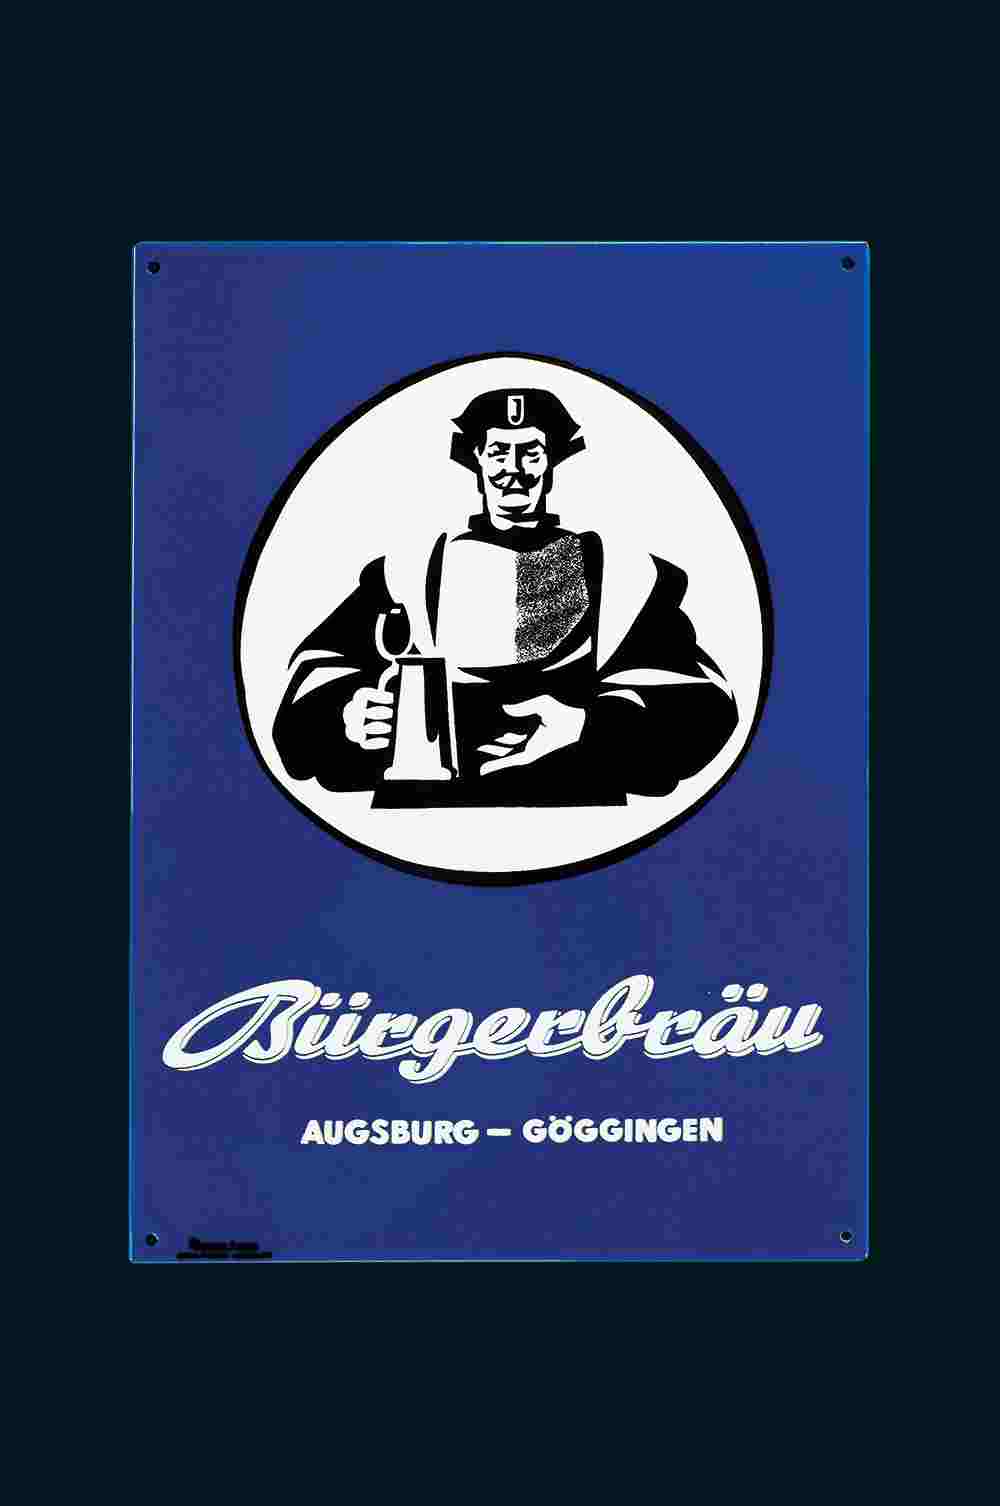 Bürgerbräu Augsburg-Göggingen 